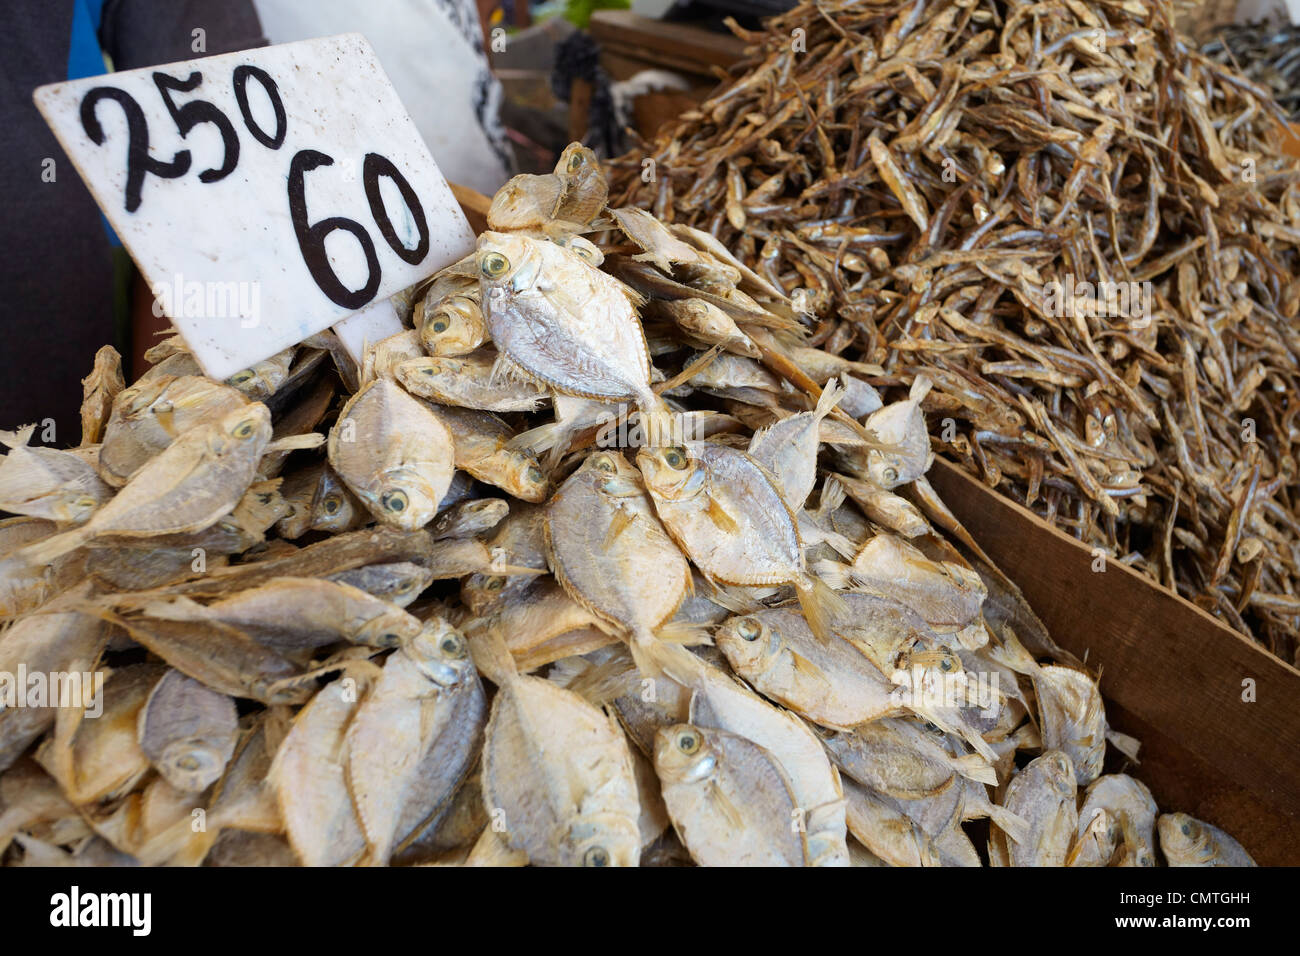 Sri Lanka - Colombo, getrocknet und gesalzen Fisch auf dem Markt Stockfoto